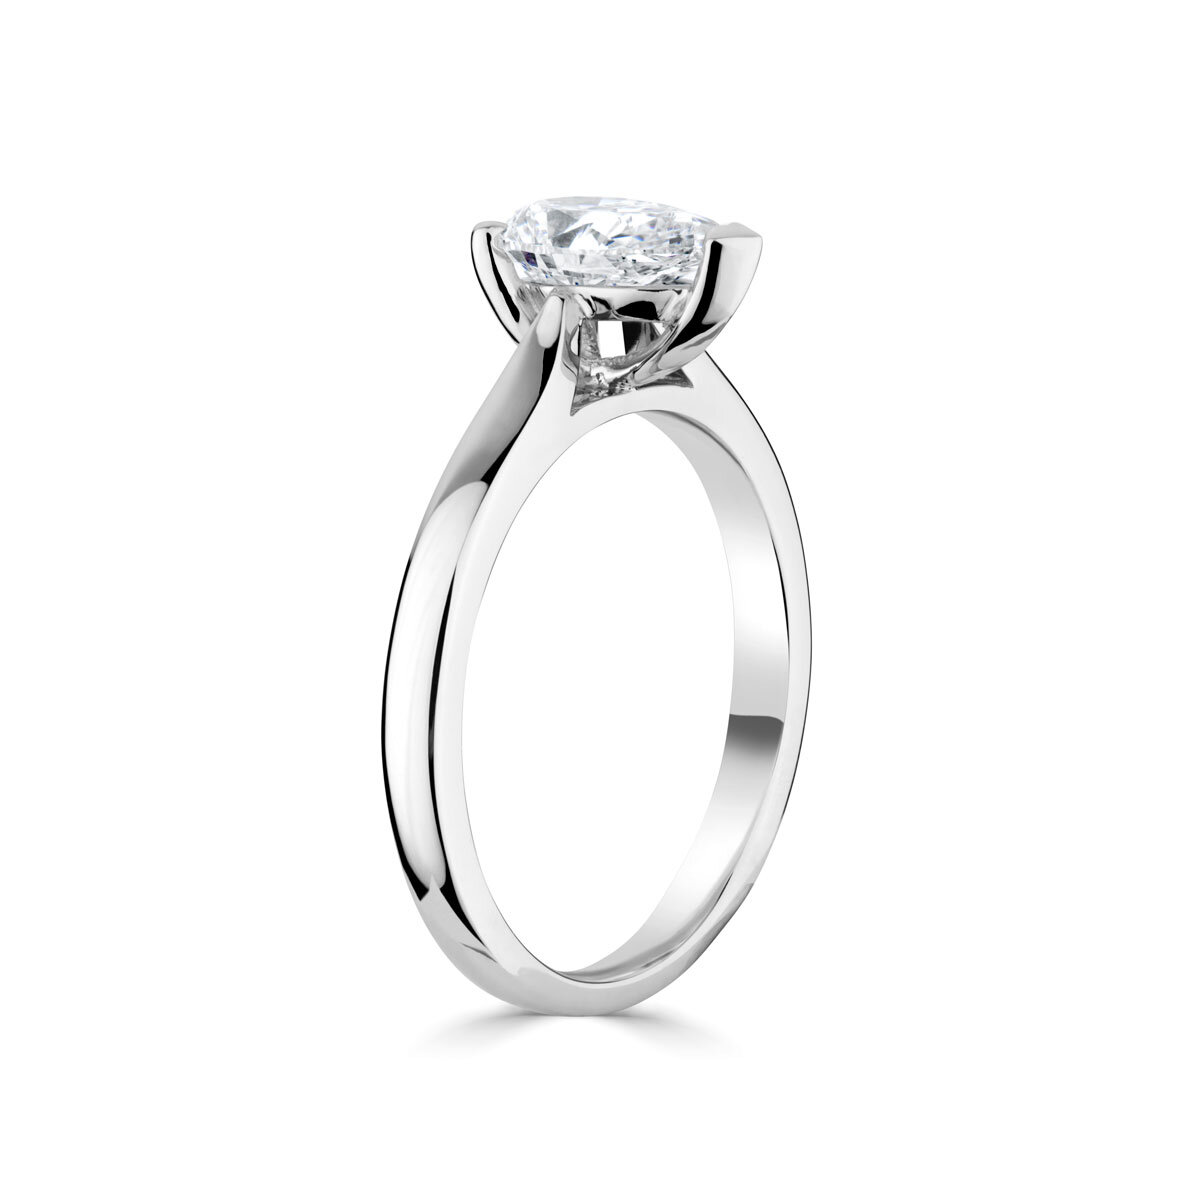 1.00ct Pear Cut Diamond Solitaire Ring, Platinum